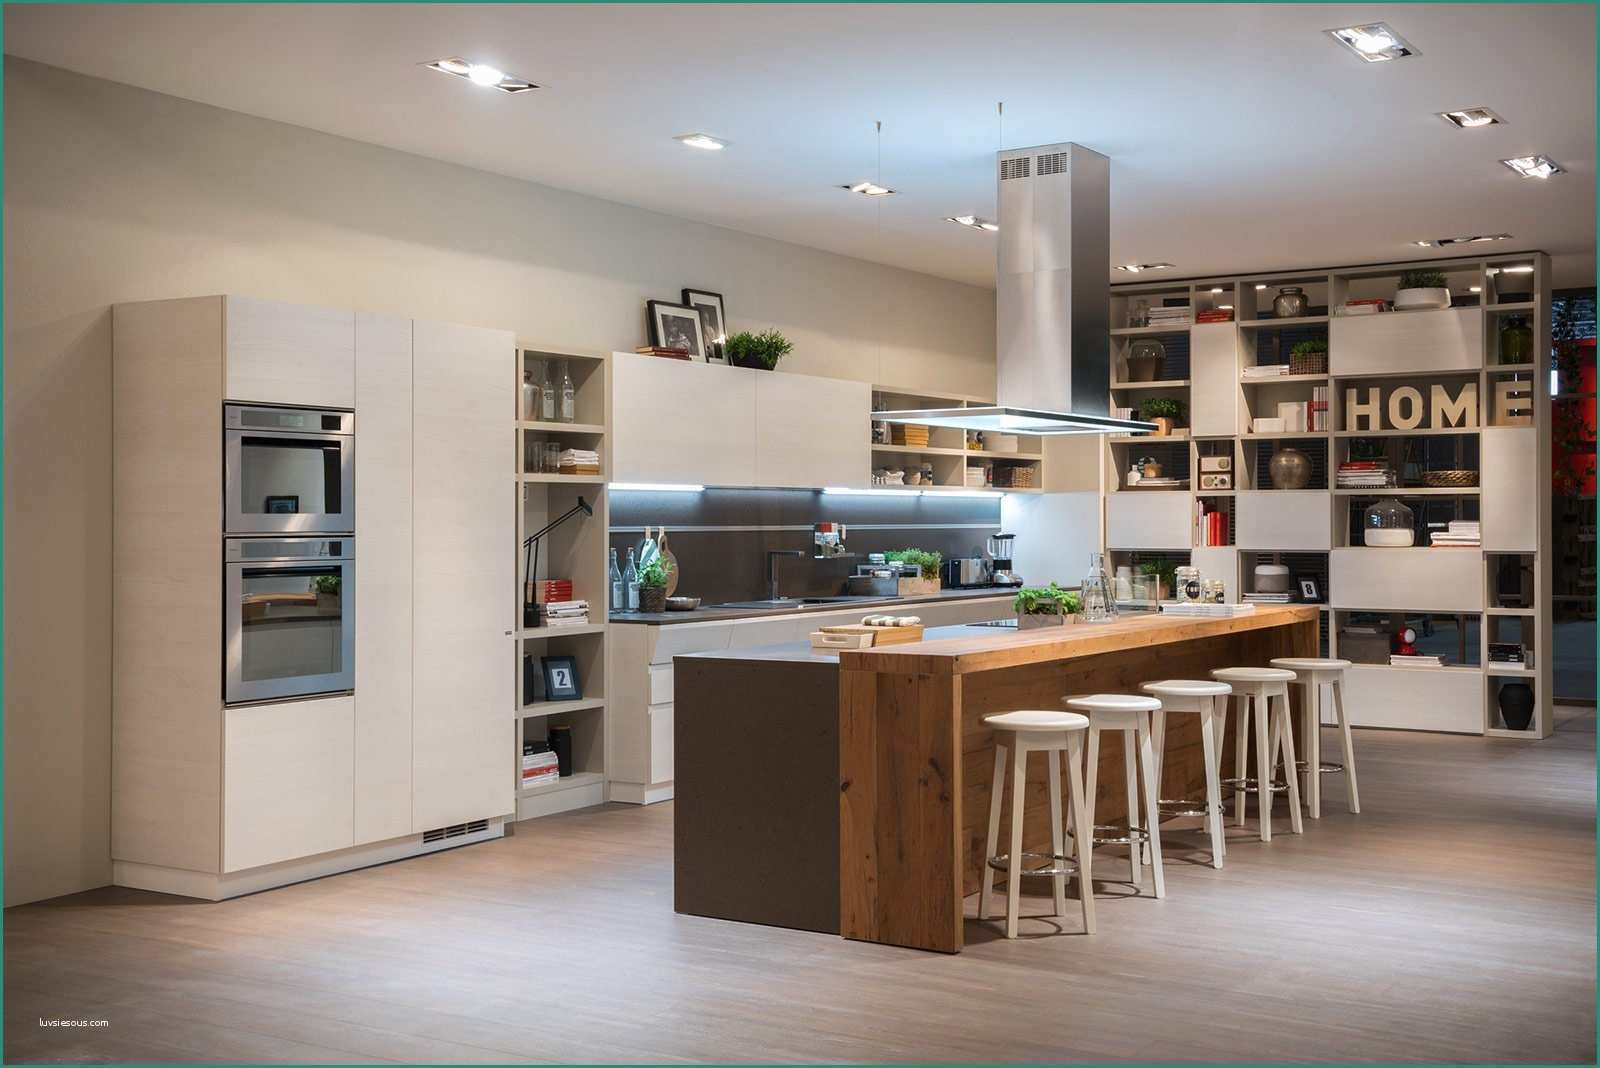 Cucina In Linea E Cucina E soggiorno Openspace Funzioni Divise O Spiccata